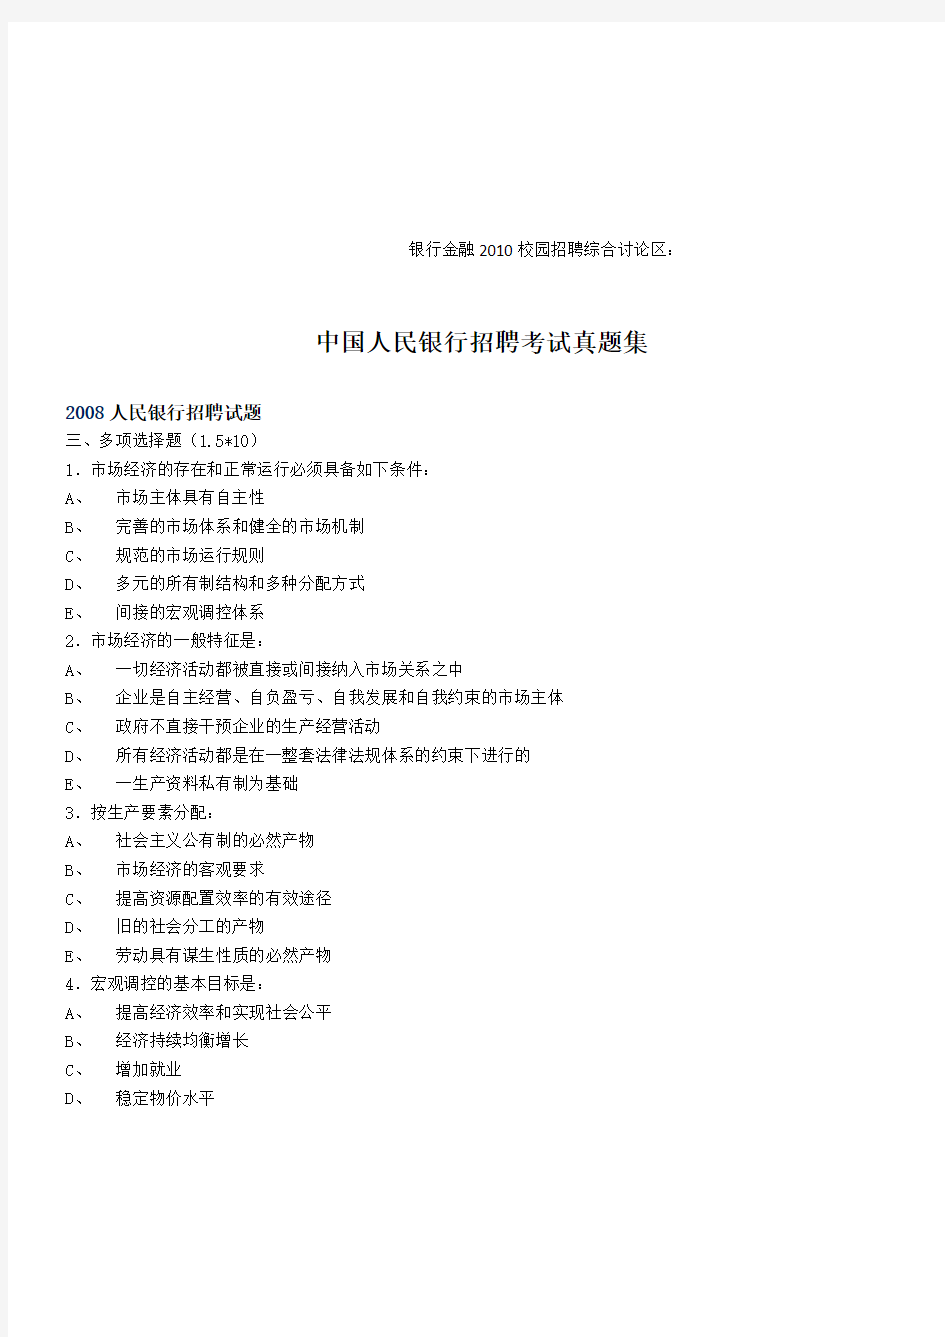 中国人民银行20082007招聘考试试题集